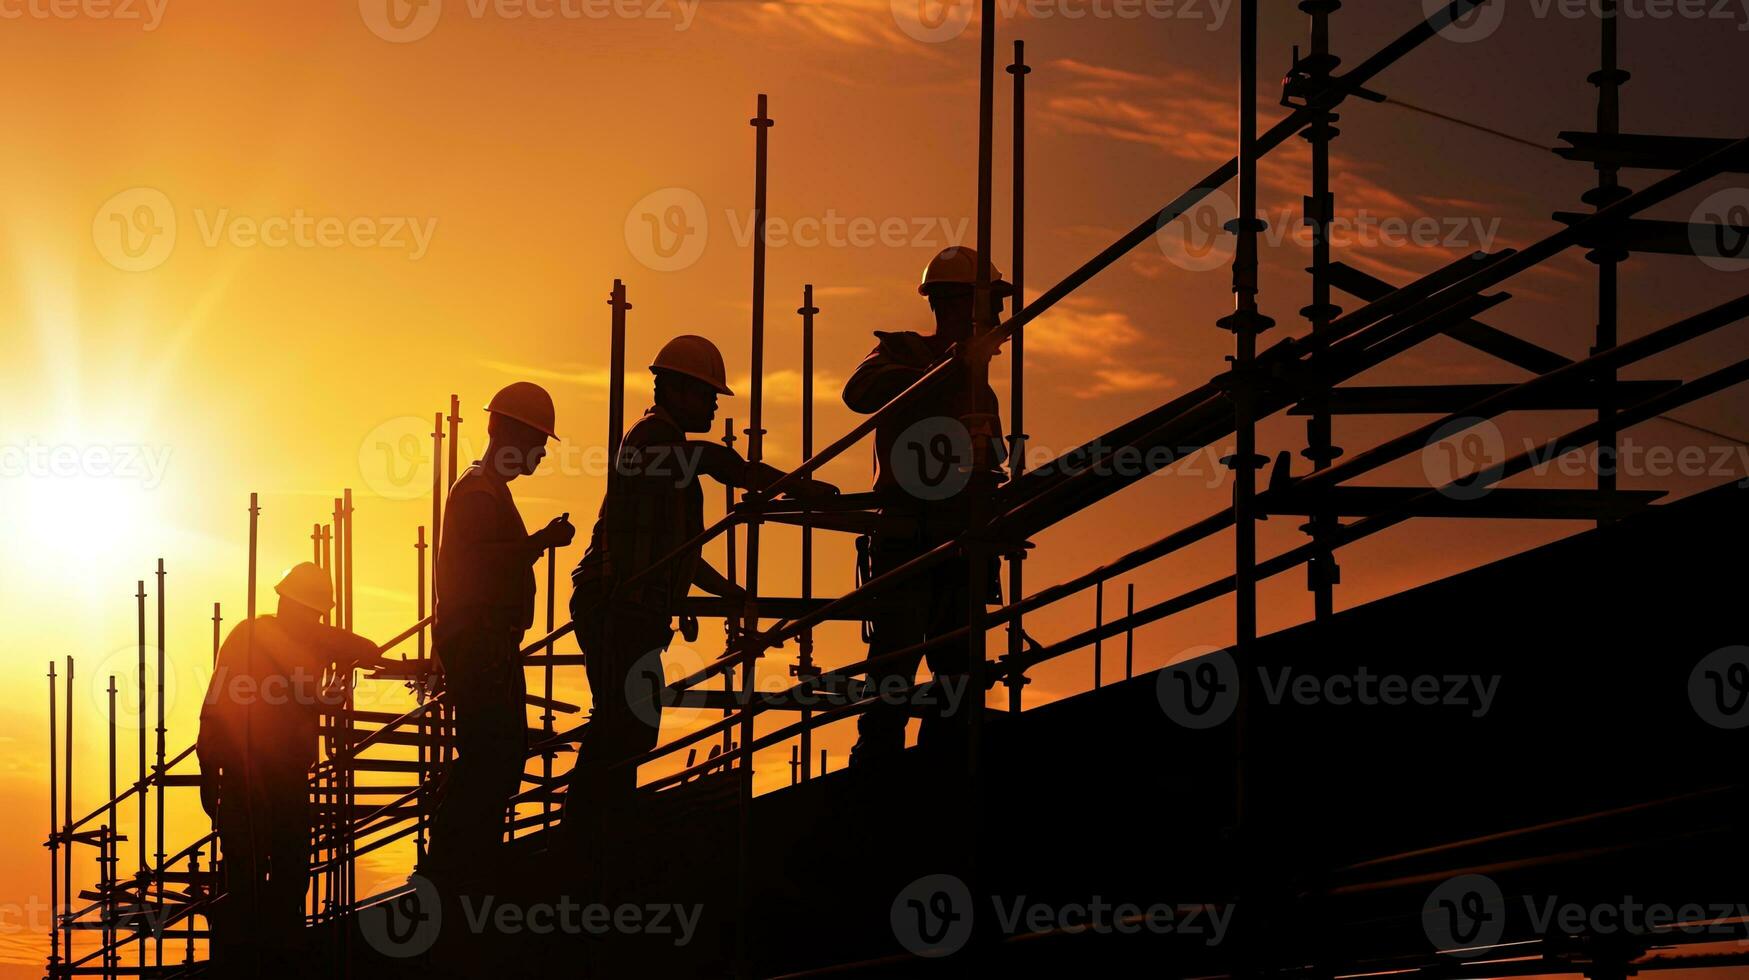 konstruktion arbetare på byggnadsställning arbetssätt i intensiv solljus skuggad silhuett foto